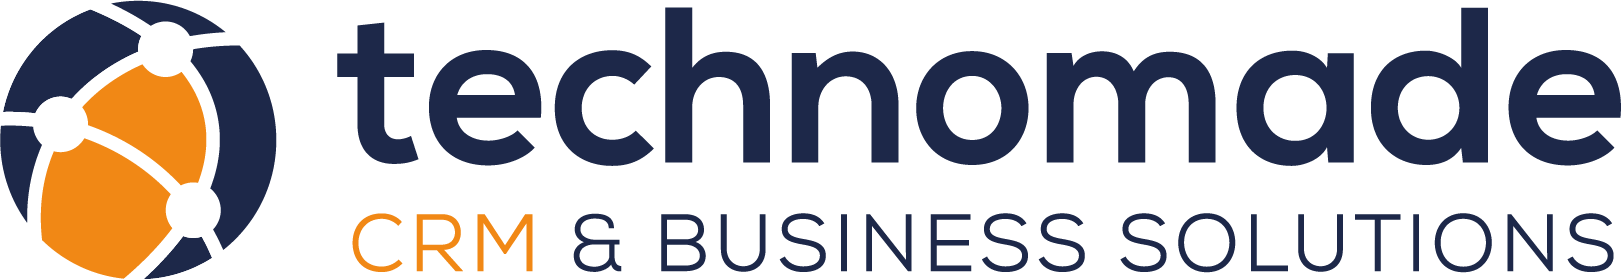 logo technomade